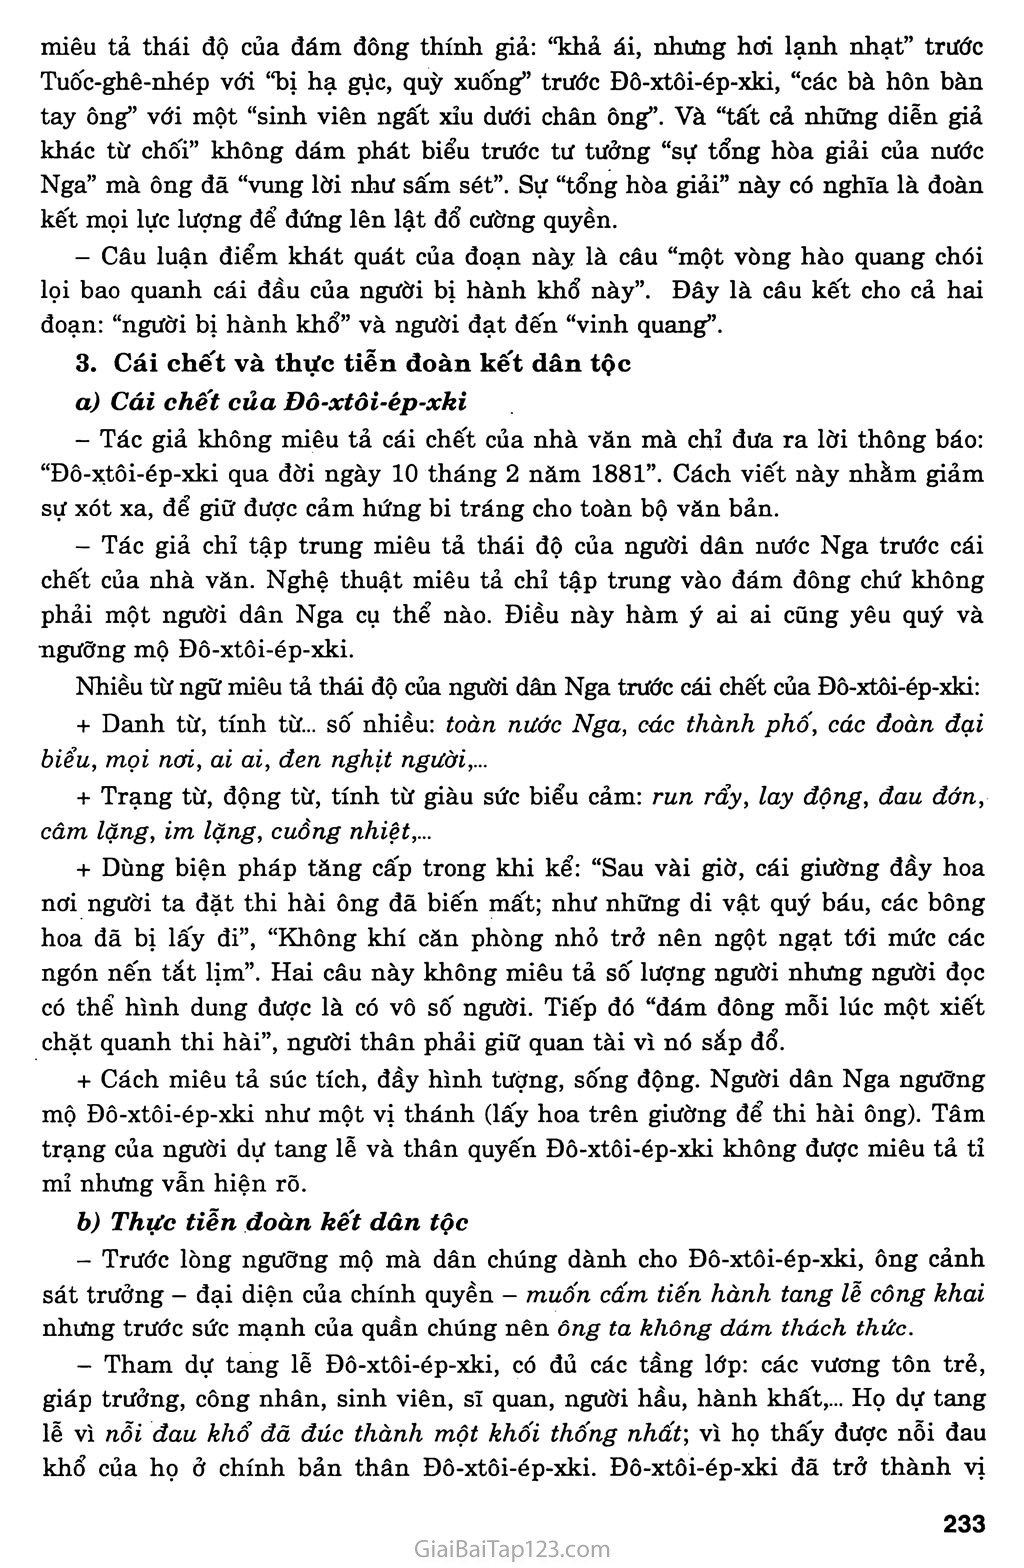 Đô - xtôi - ép - xki (Xvai - gơ) trang 4